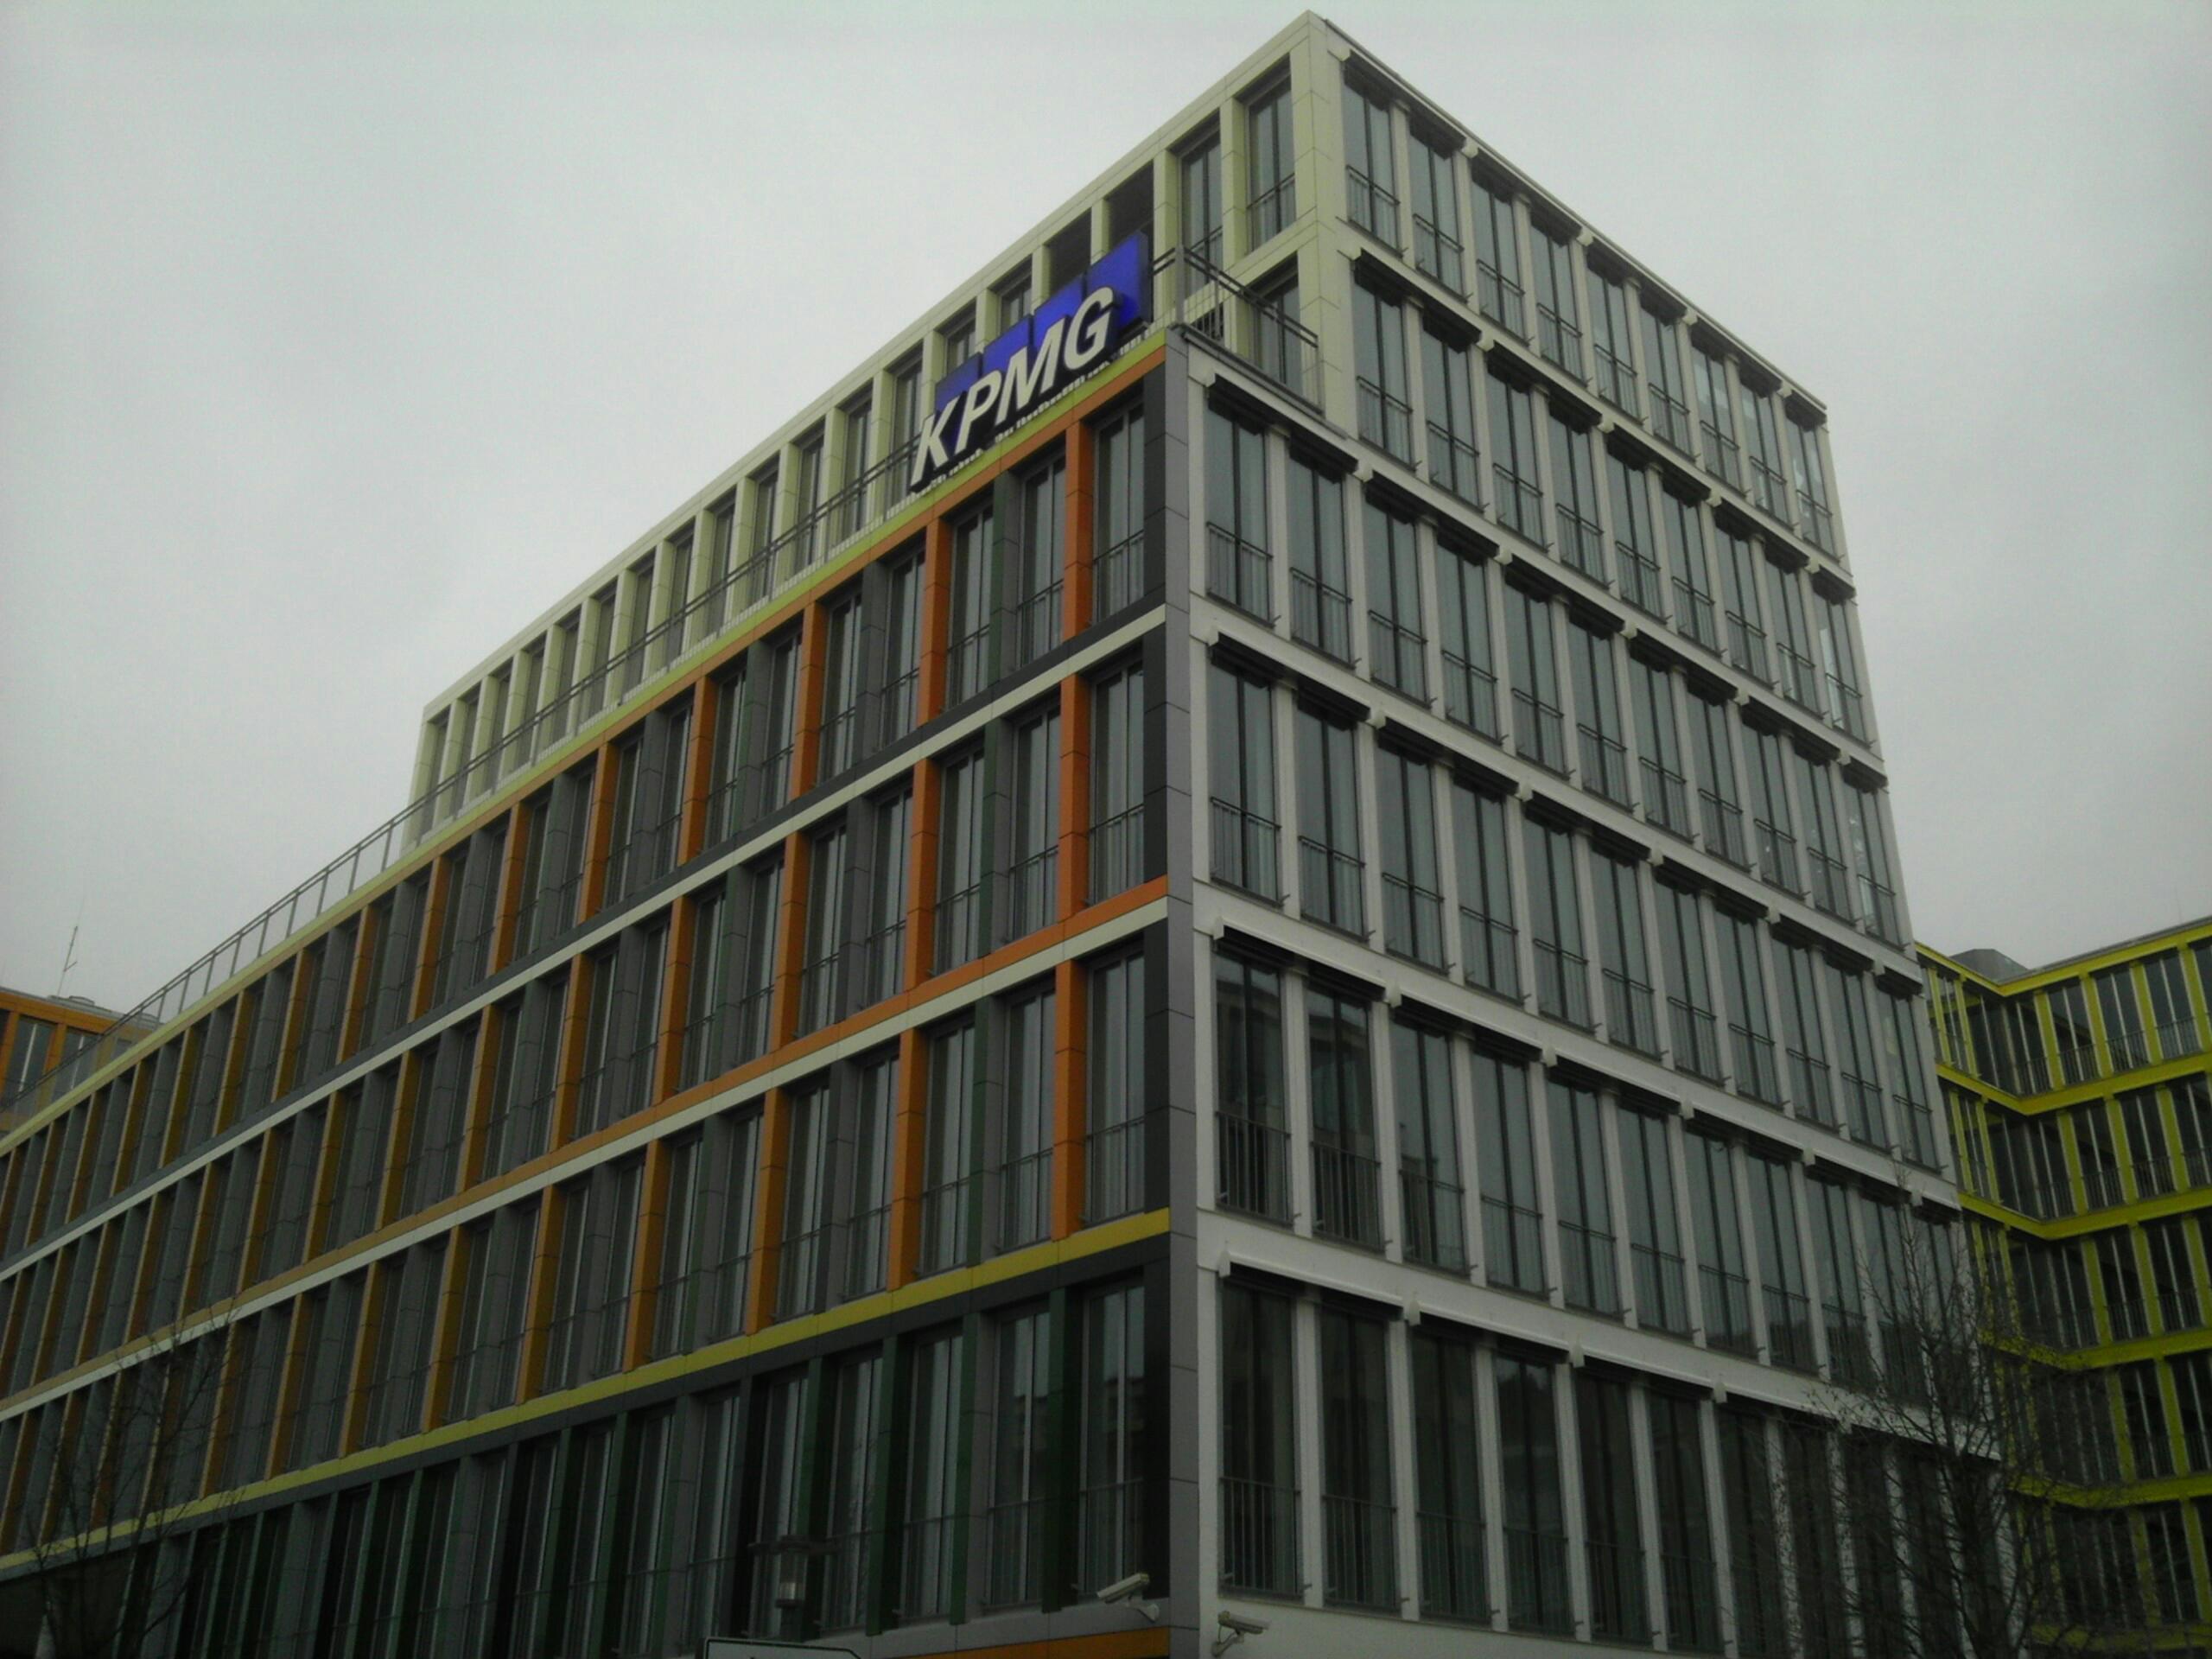 Bild 1 KPMG in München